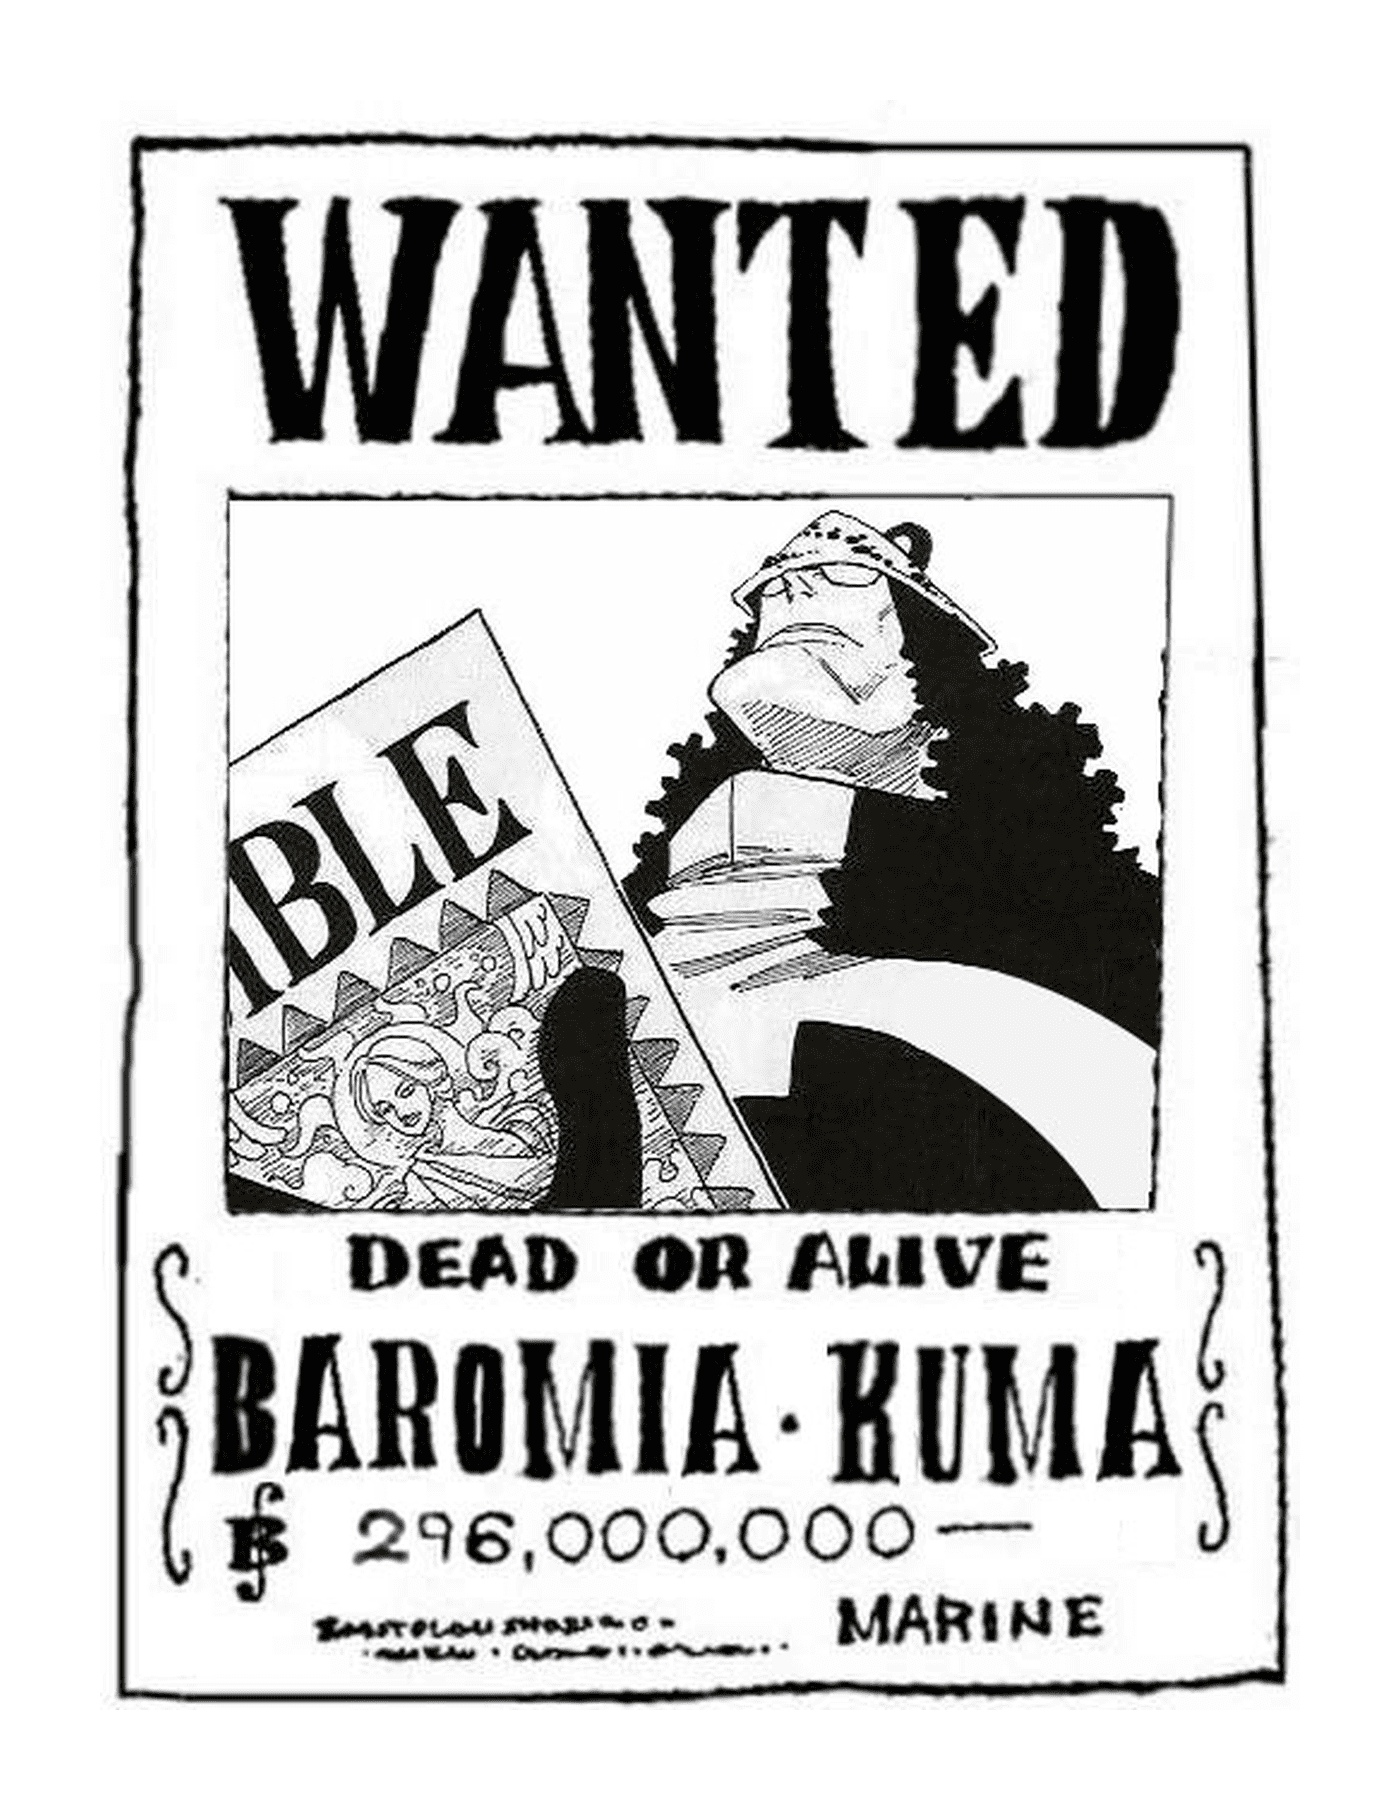  Quis Baromia Kuma, morta ou viva 